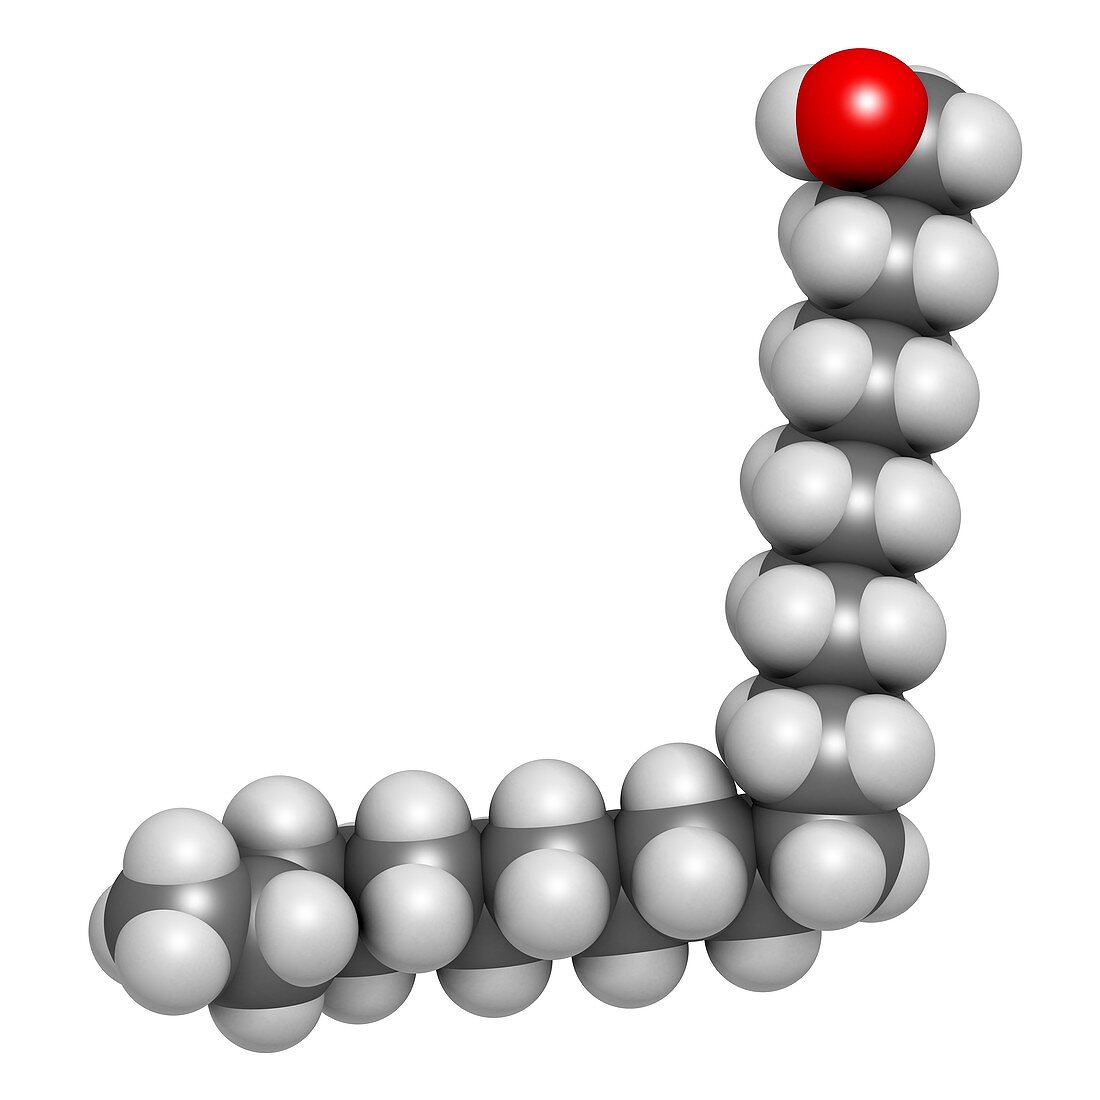 Docosanol antiviral drug molecule